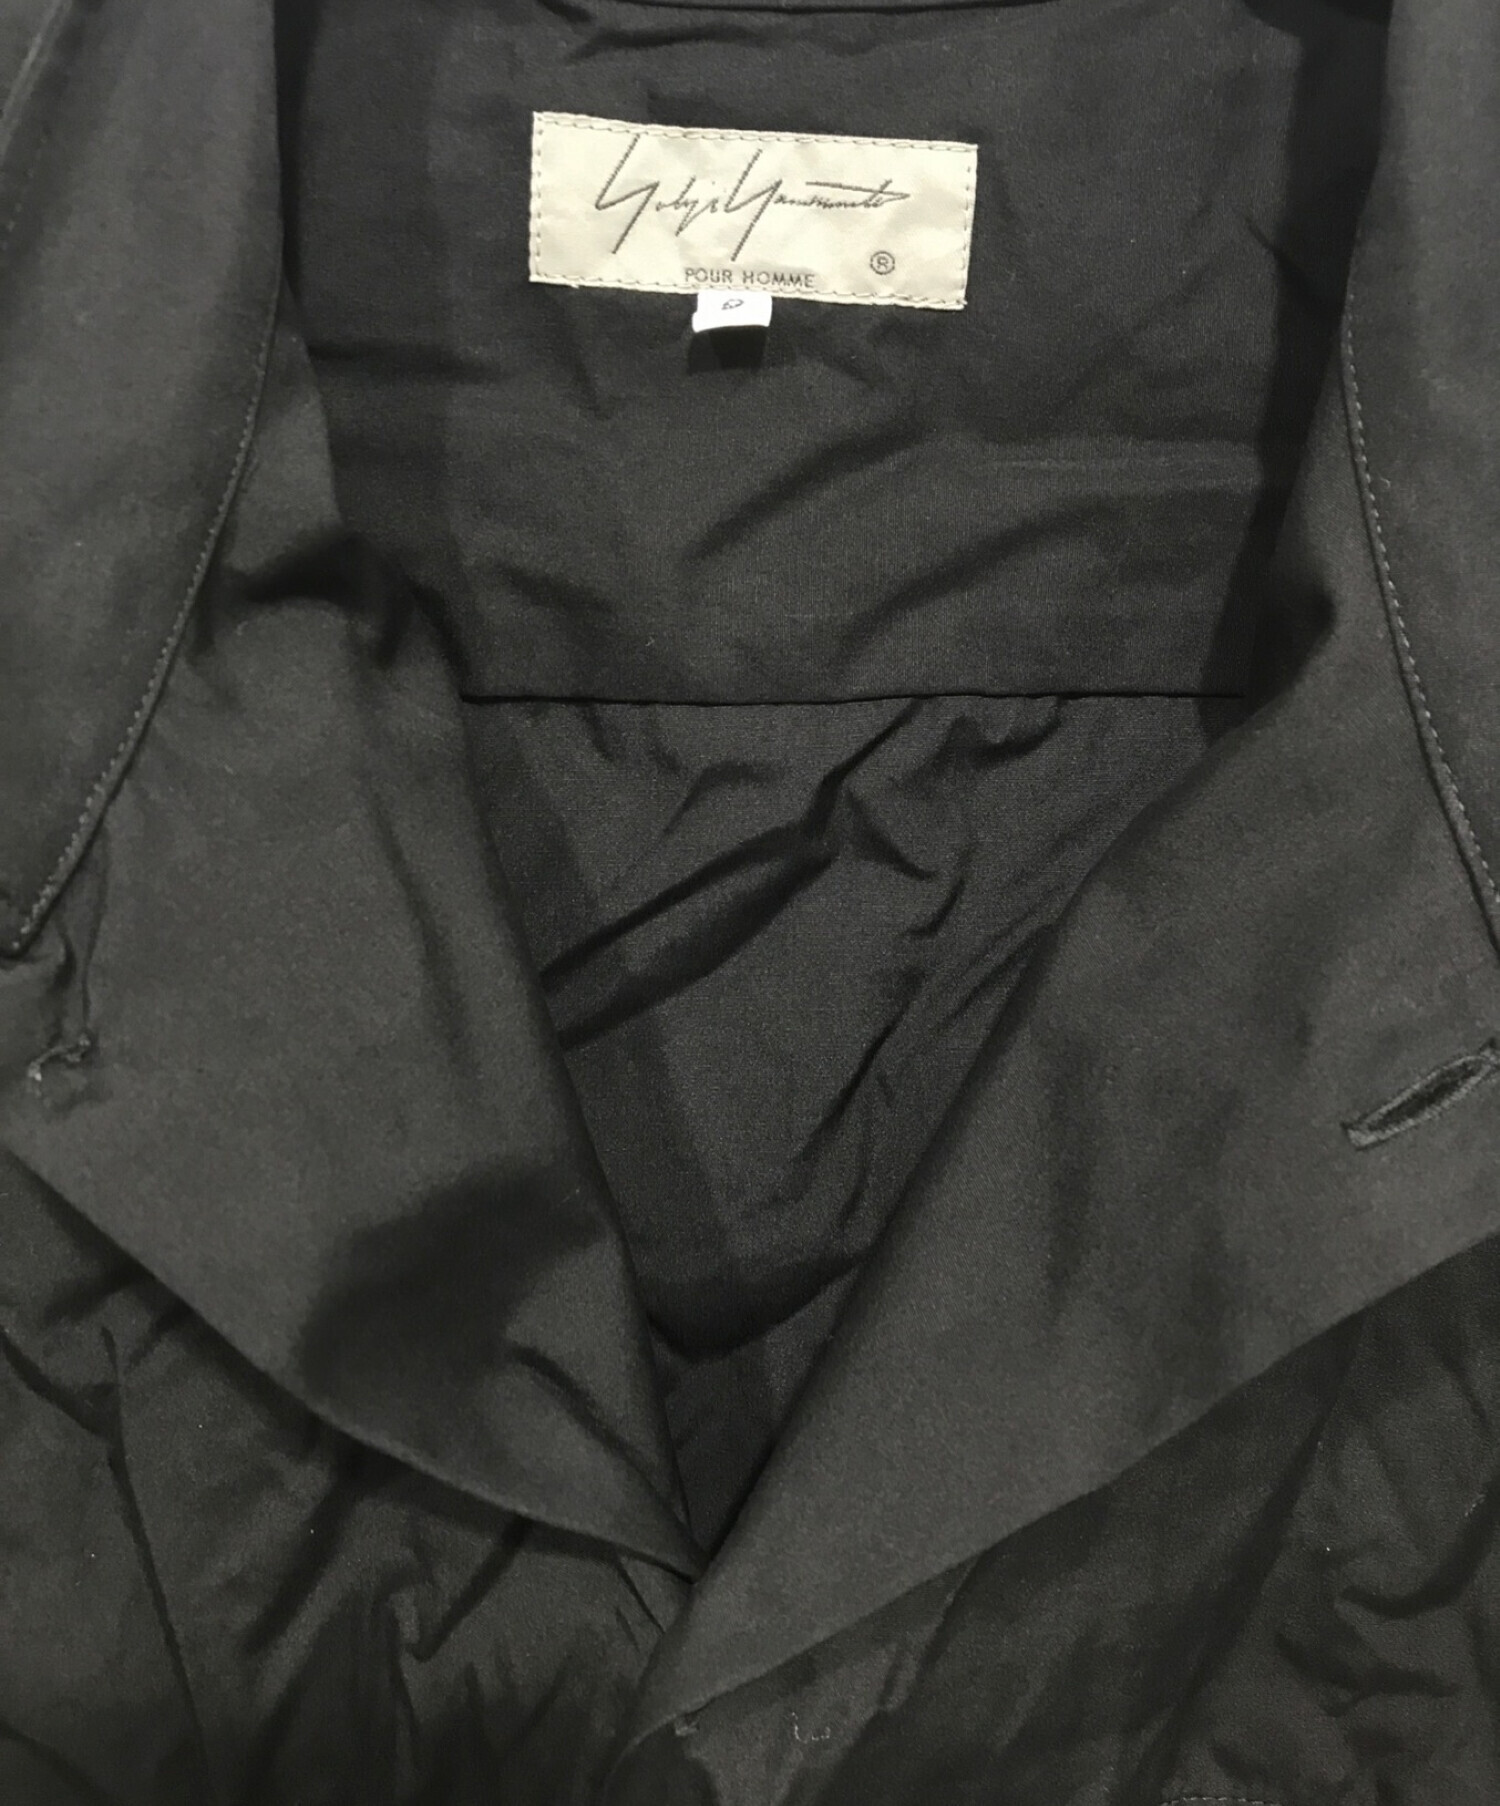 Yohji Yamamoto POUR HOMME ヨウジヤマモト プールオム 22SS Stand Shirt Coat スタンドシャツコート ブラック HG-B32-500